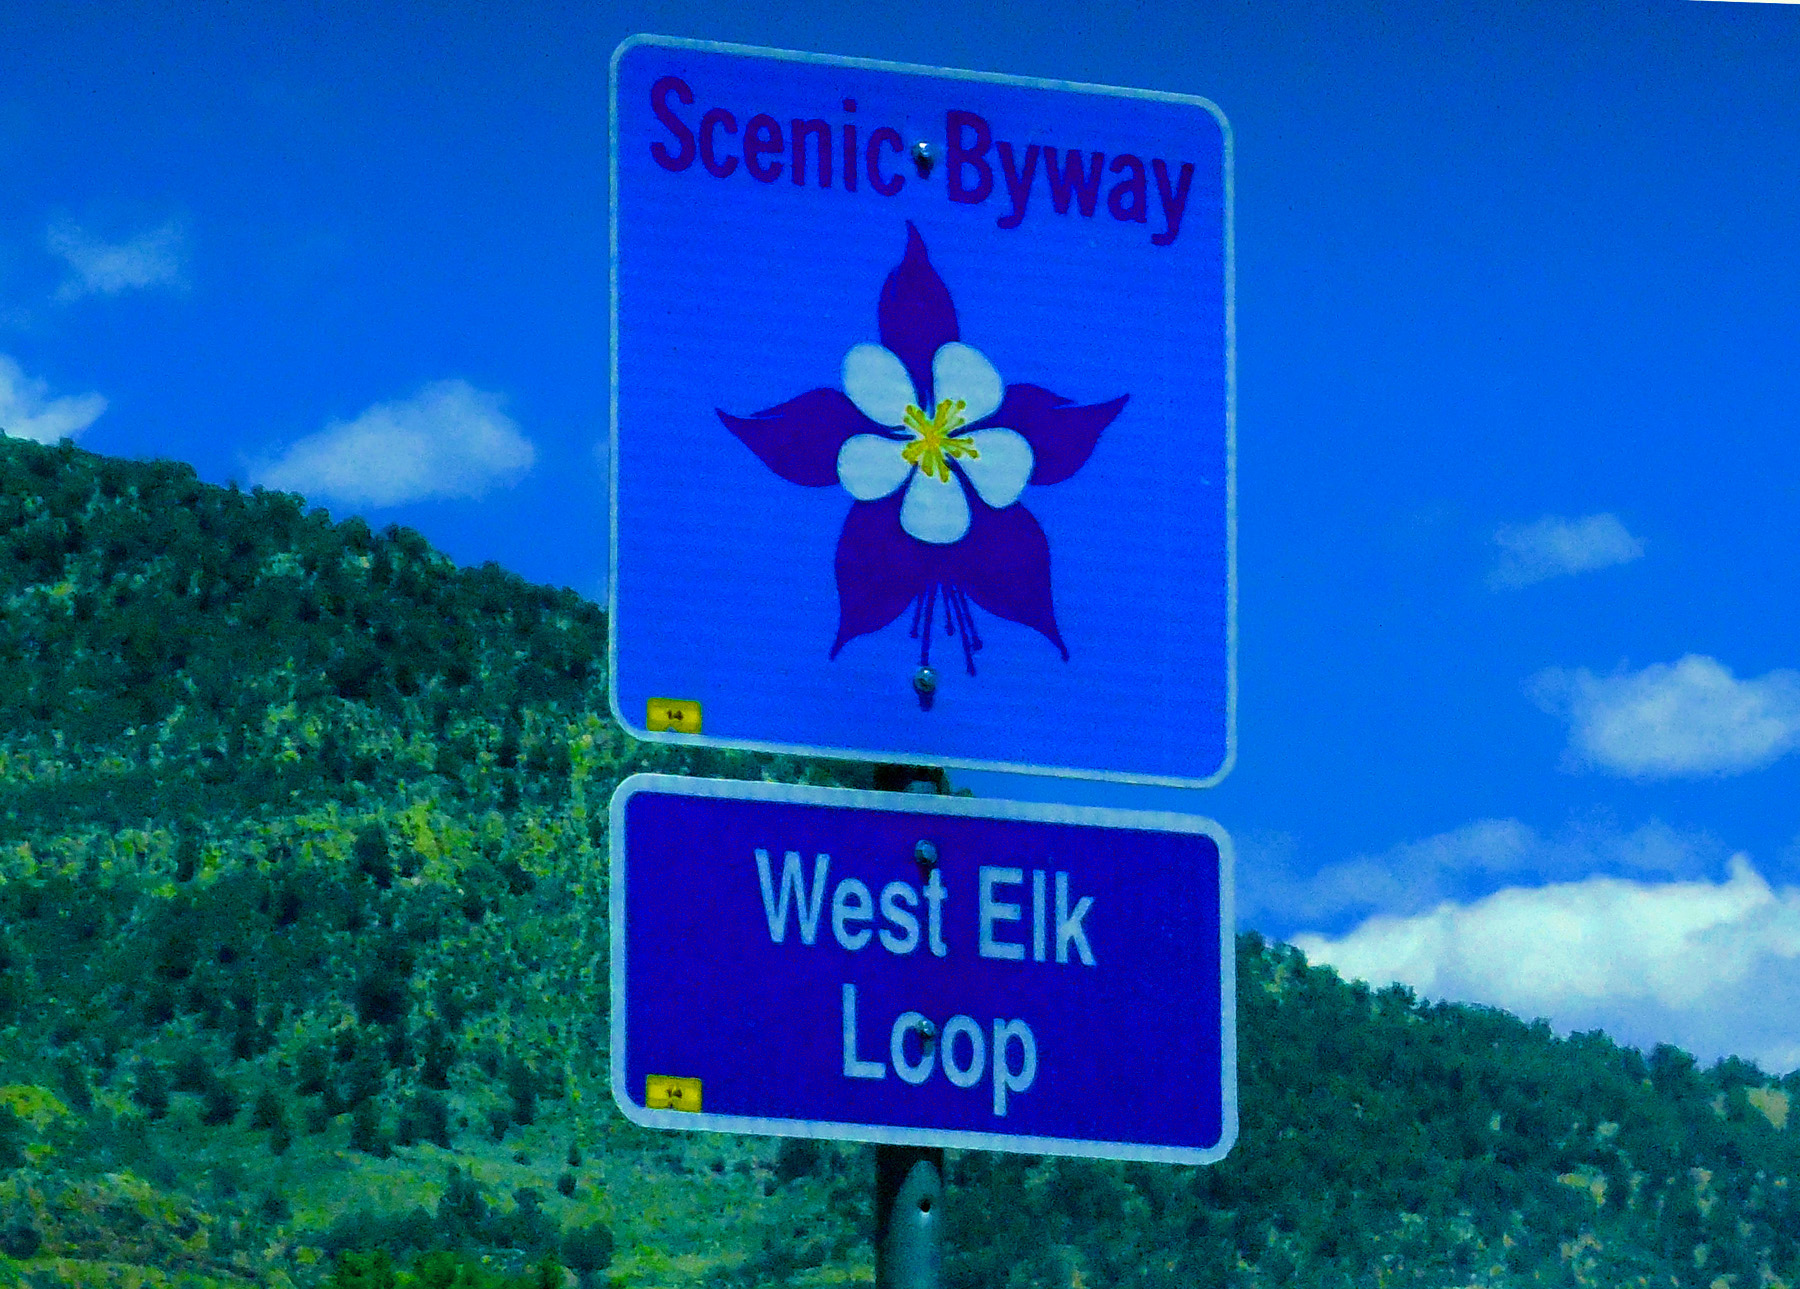 West Elk Loop Scenic Byway